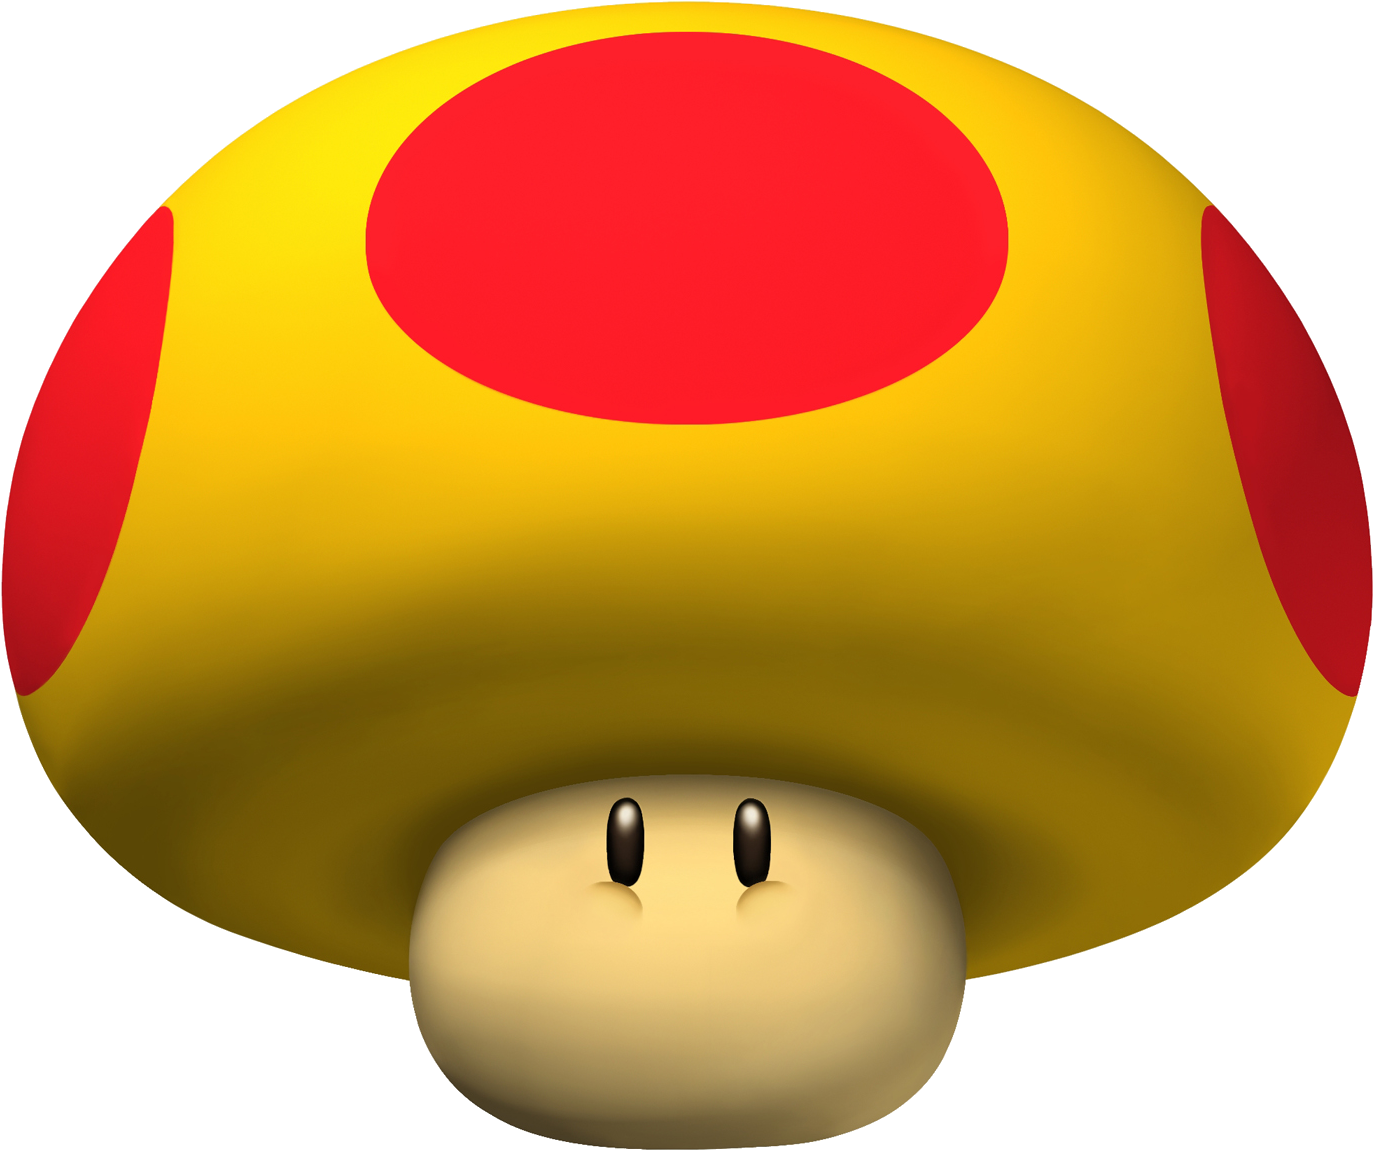 Mega Mushroom Artwork - Mario Kart Mega Mushroom (1389x1176)